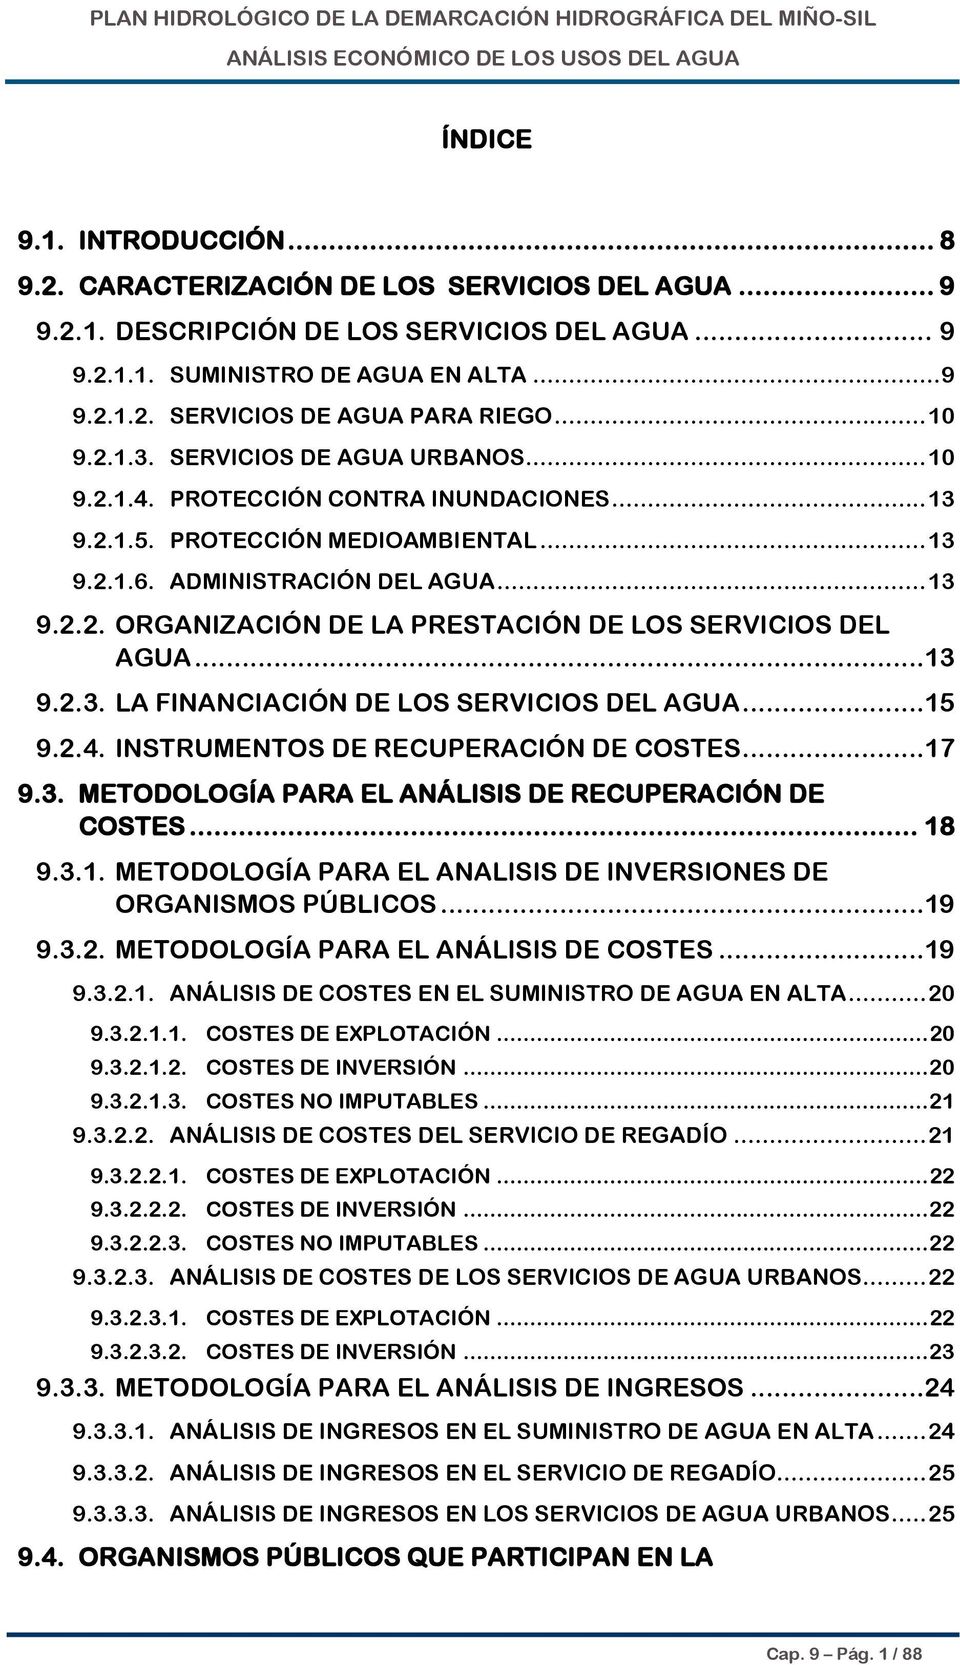 ..13 9.2.3. LA FINANCIACIÓN DE LOS SERVICIOS DEL AGUA...15 9.2.4. INSTRUMENTOS DE RECUPERACIÓN DE COSTES...17 9.3. METODOLOGÍA PARA EL ANÁLISIS DE RECUPERACIÓN DE COSTES... 18 9.3.1. METODOLOGÍA PARA EL ANALISIS DE INVERSIONES DE ORGANISMOS PÚBLICOS.